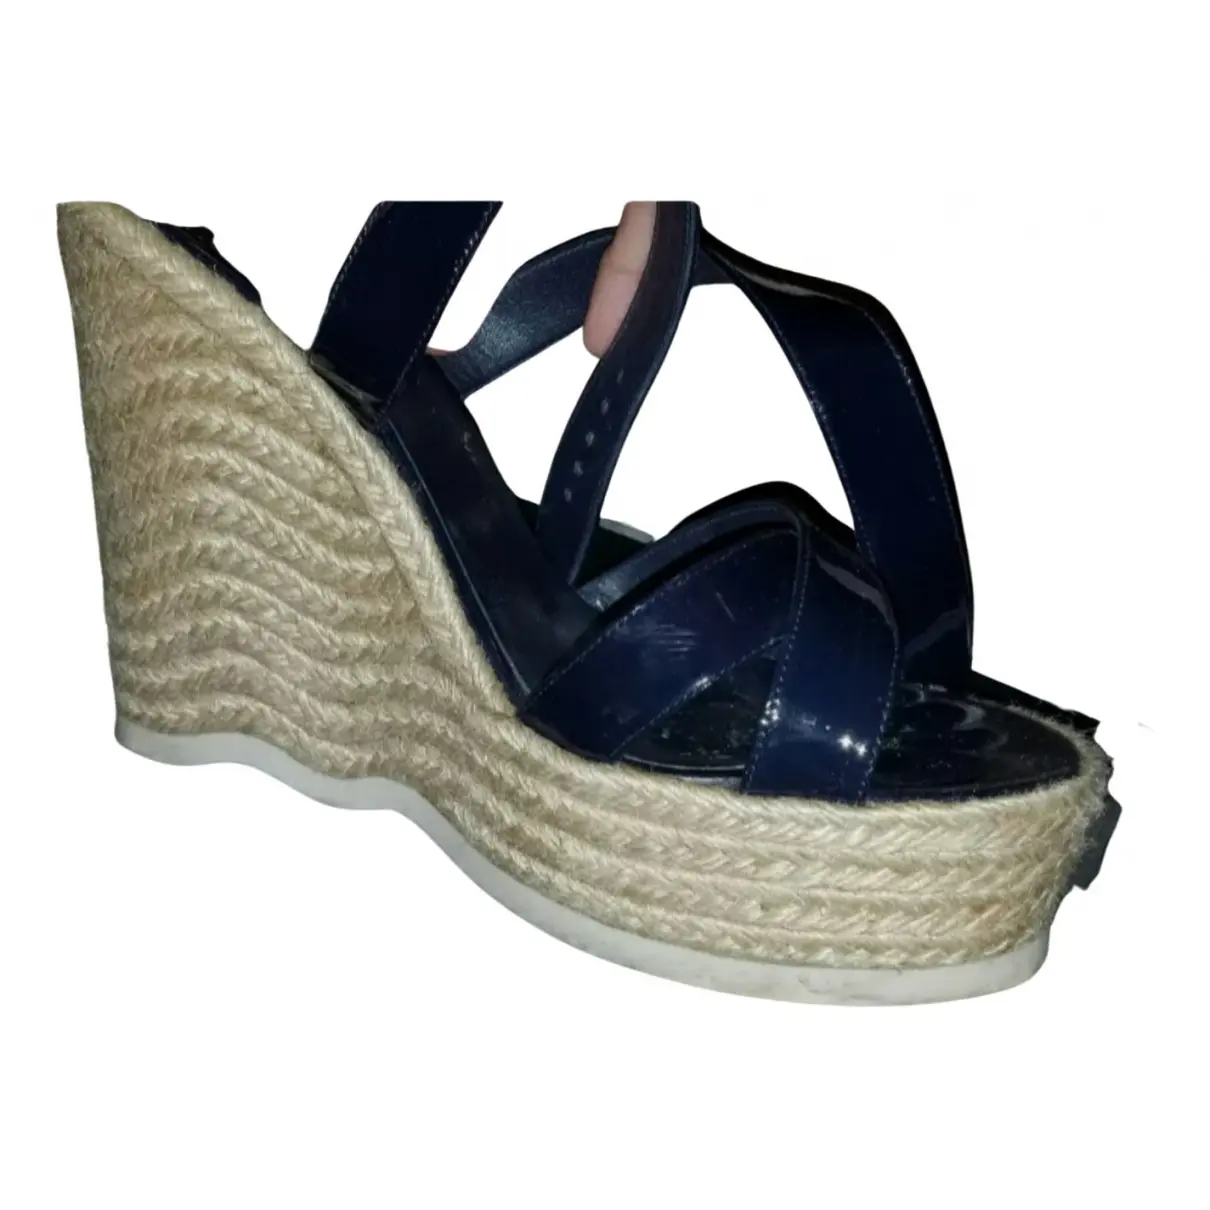 Patent leather sandals Yves Saint Laurent - Vintage